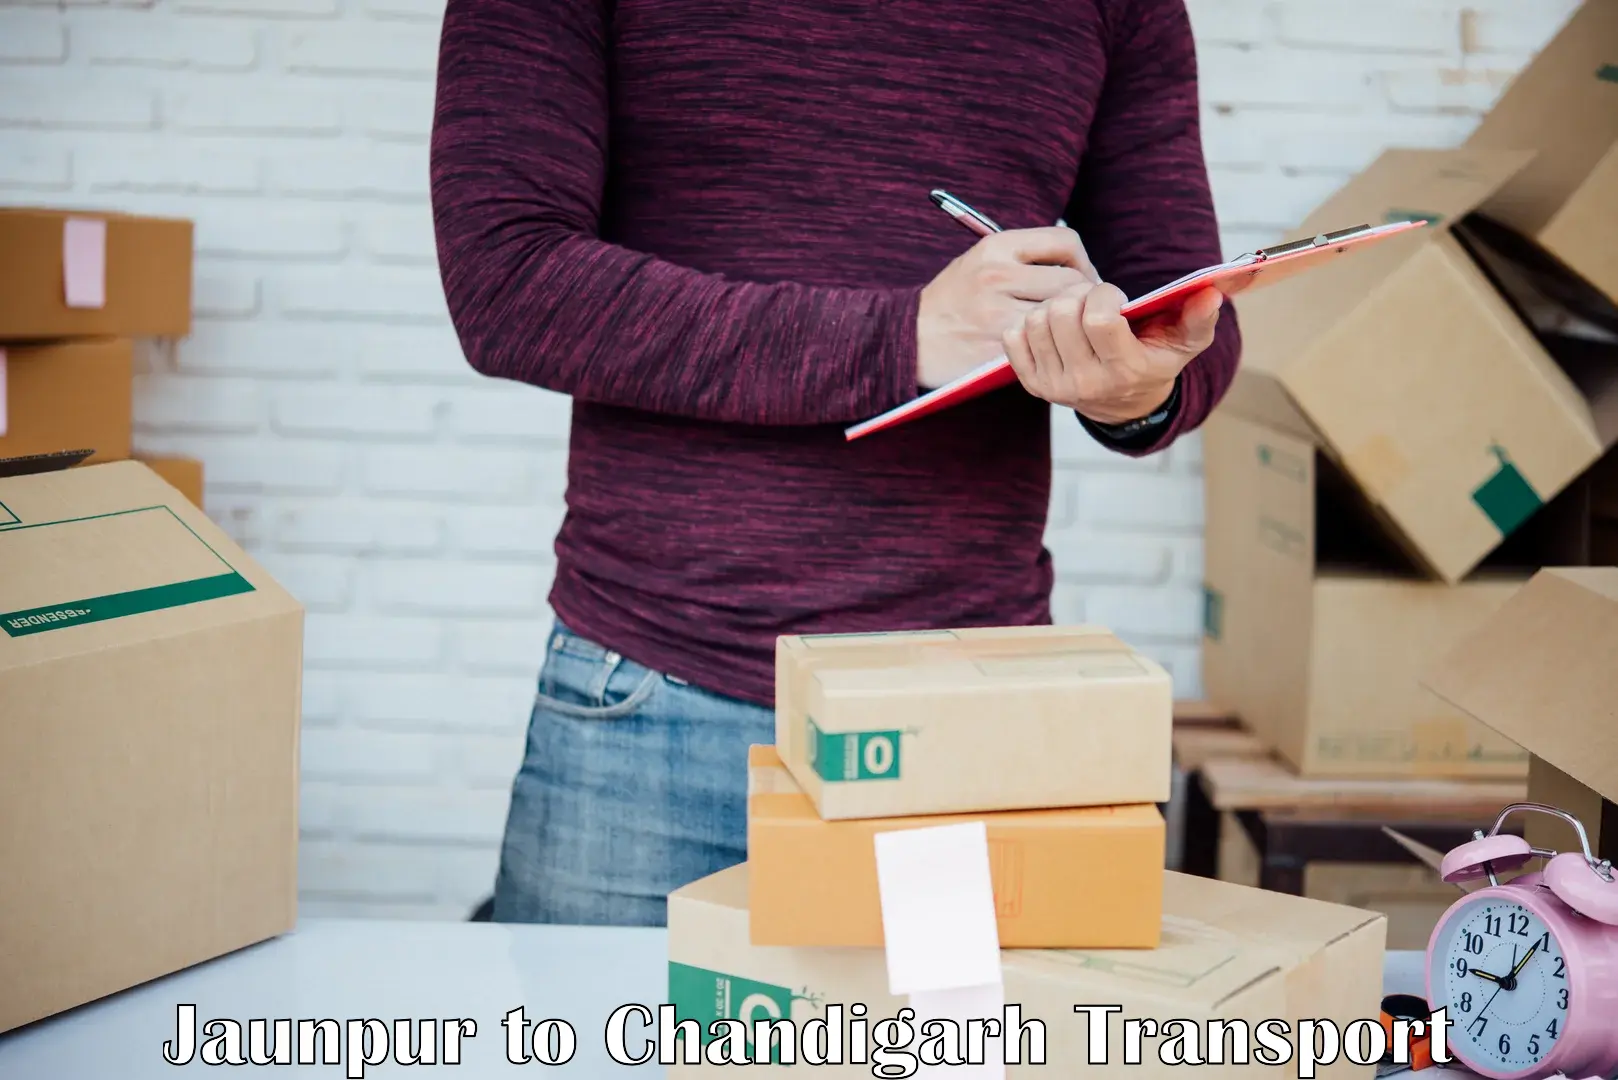 Shipping partner Jaunpur to Chandigarh